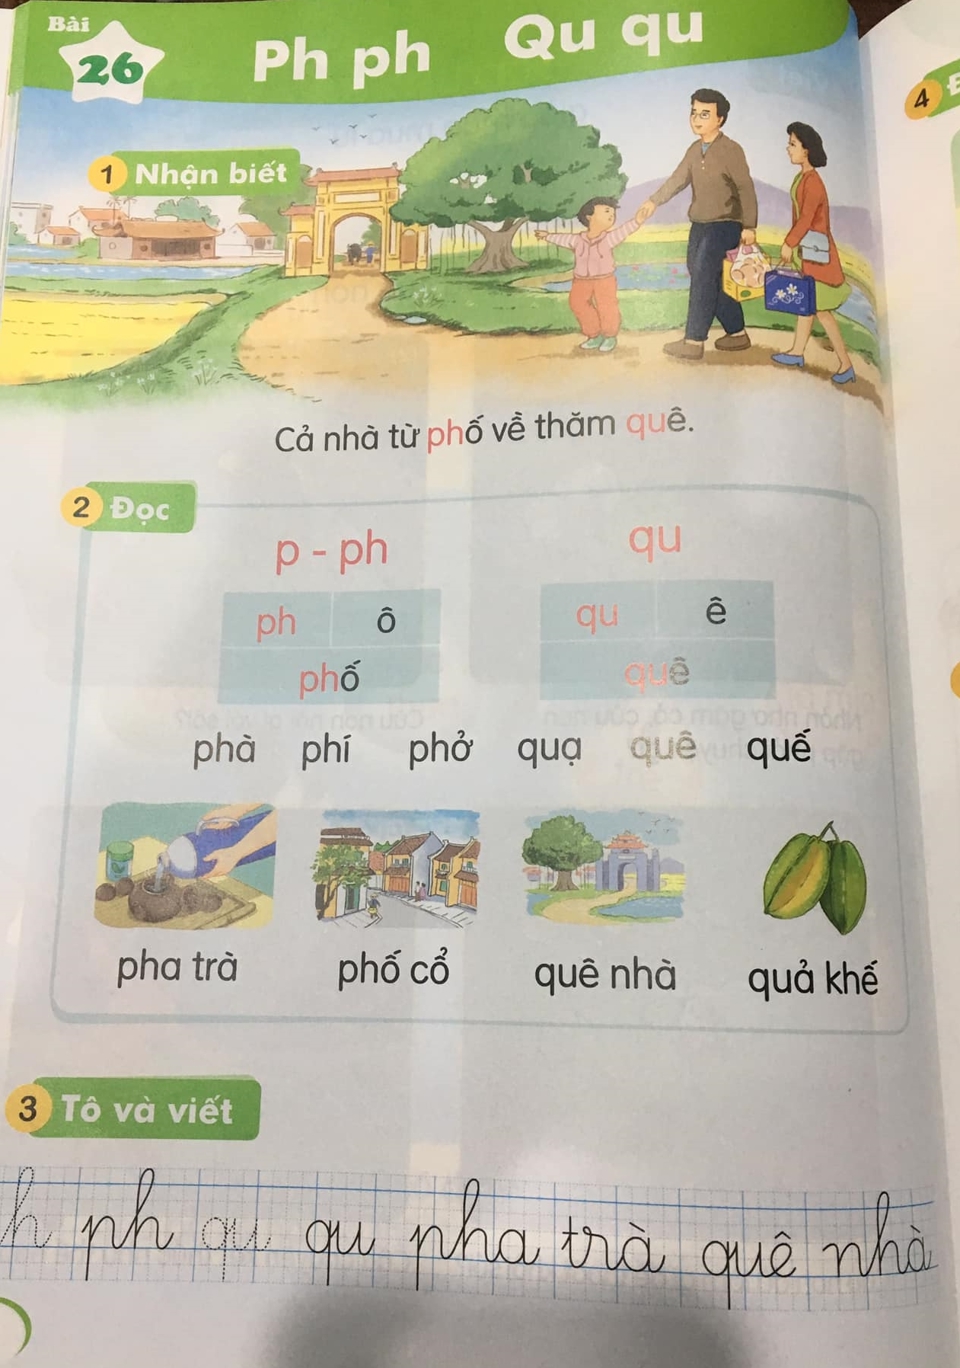 Bài học về chữ P được lồng với chữ PH trong SGK Tiếng Việt 1- bộ Kết nối